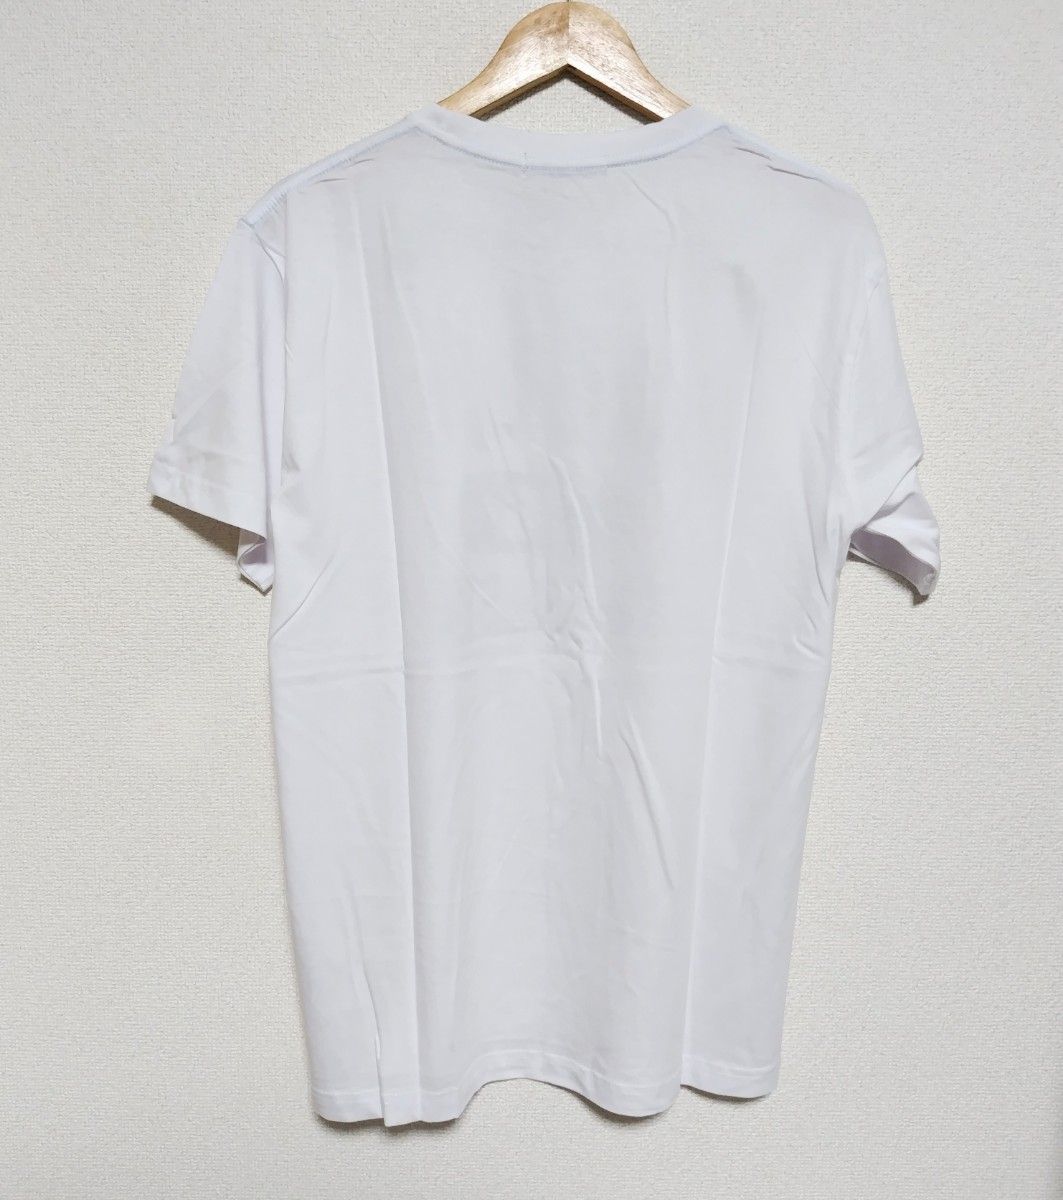 【新品】ARCADE ロゴプリントTシャツ クルーネック アメカジ 半袖 ホワイト LLサイズ